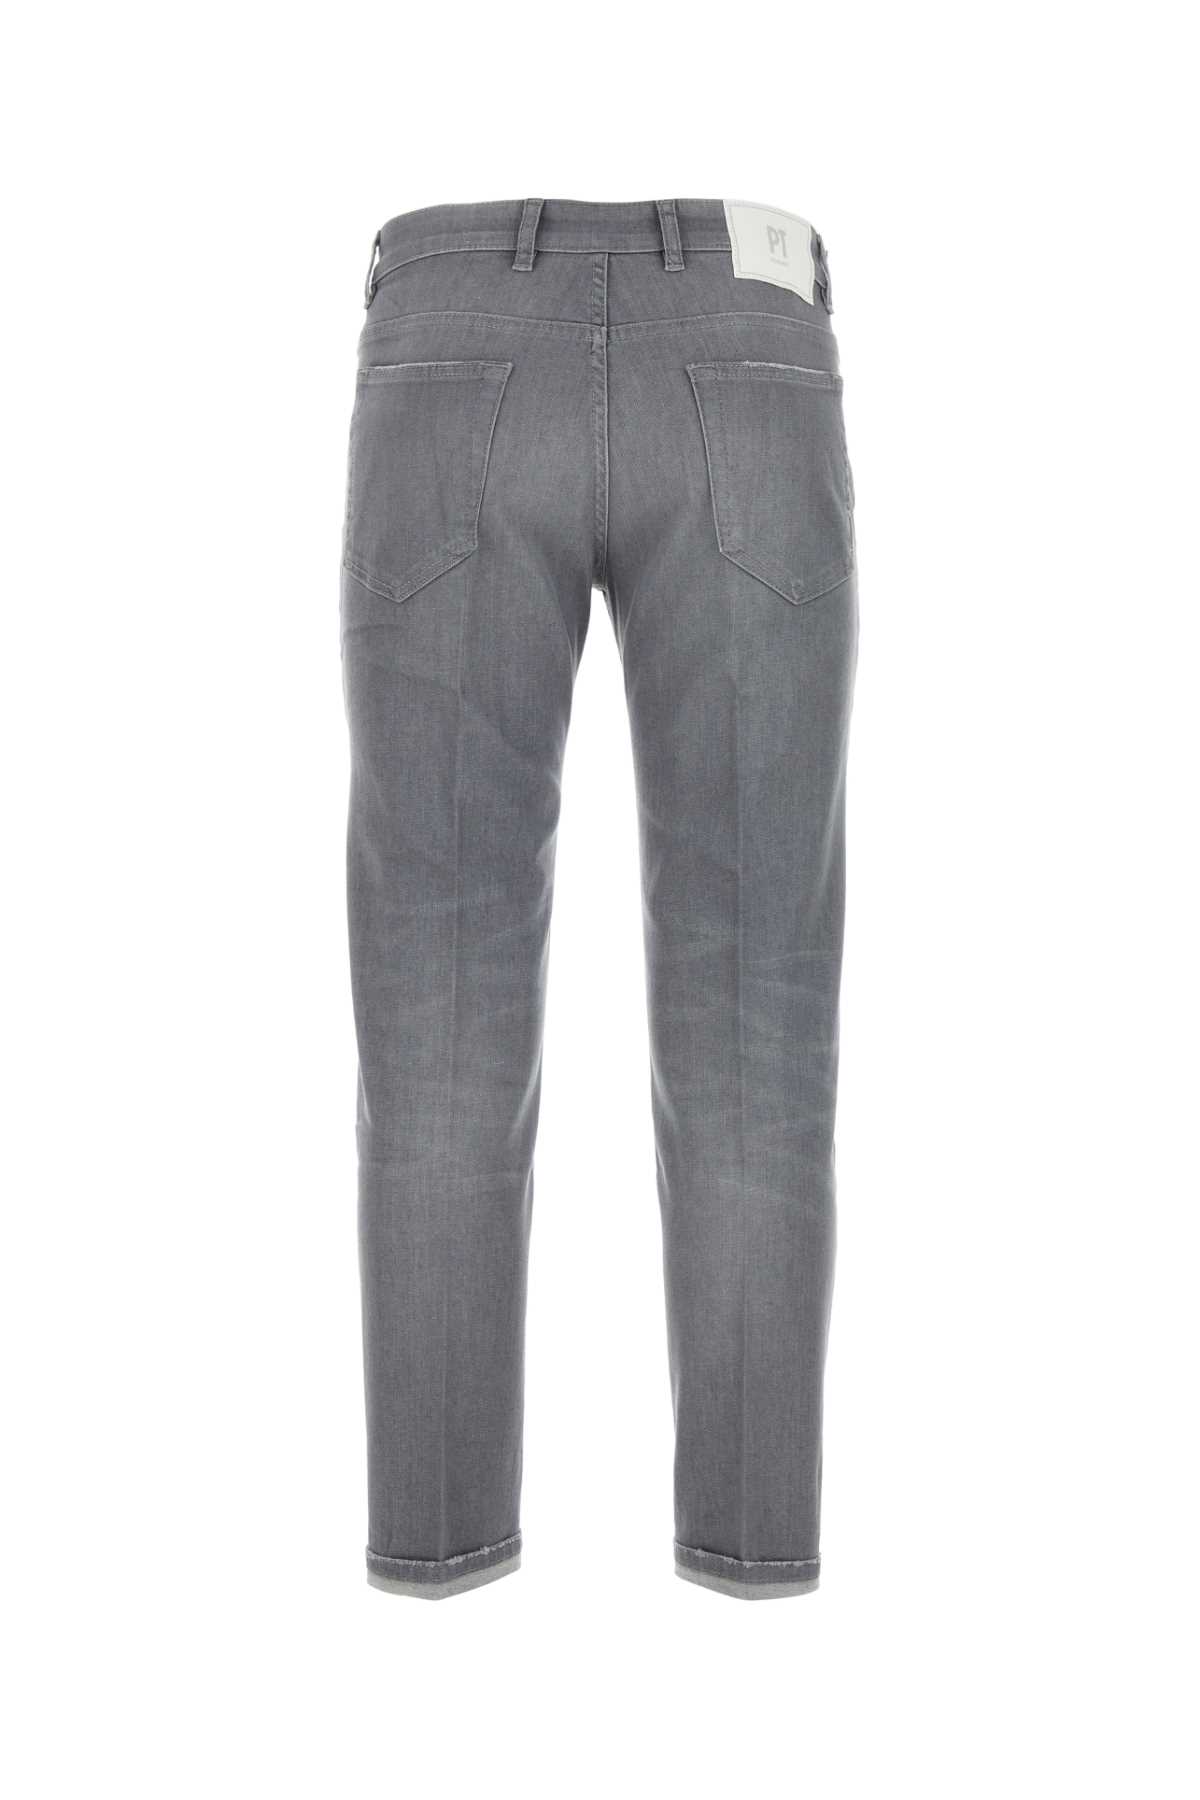 Pt01 Grey Stretch Denim Indie Jeans In Grigio